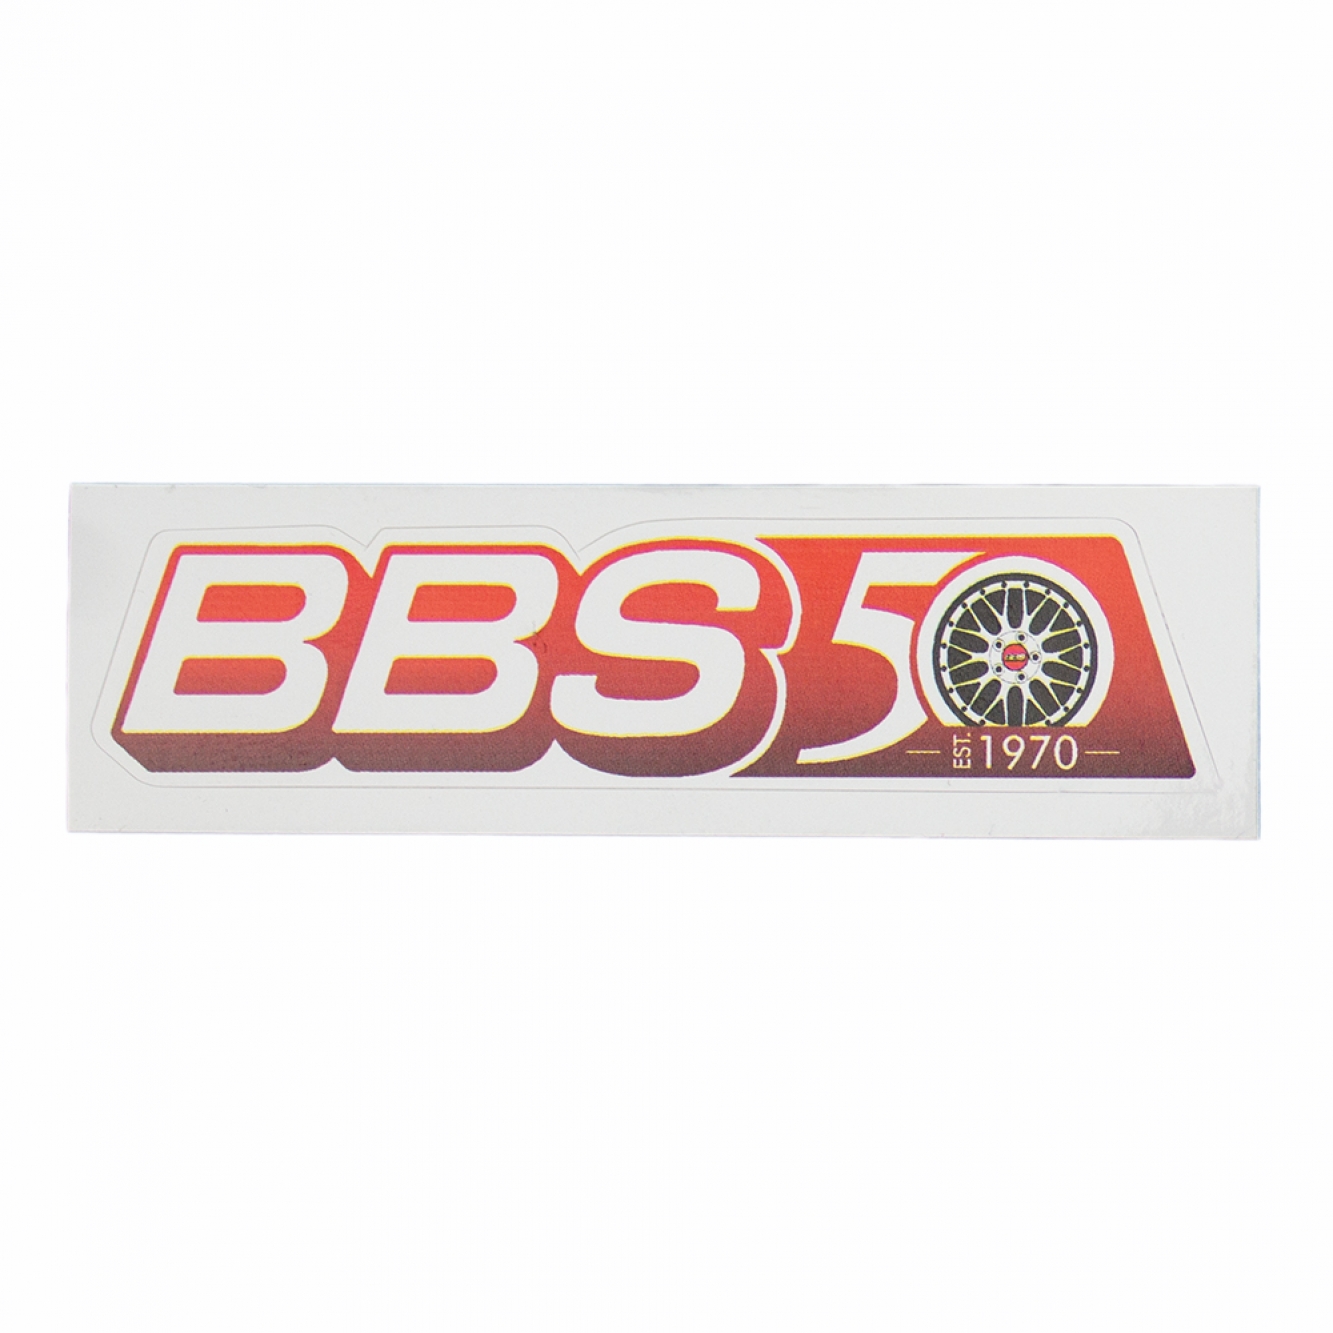 4x BBS Aufkleber Felgen (22x72 mm) Sticker Logo Auto Tuning Optik Styling Decal 50 Jahre Jubiläum